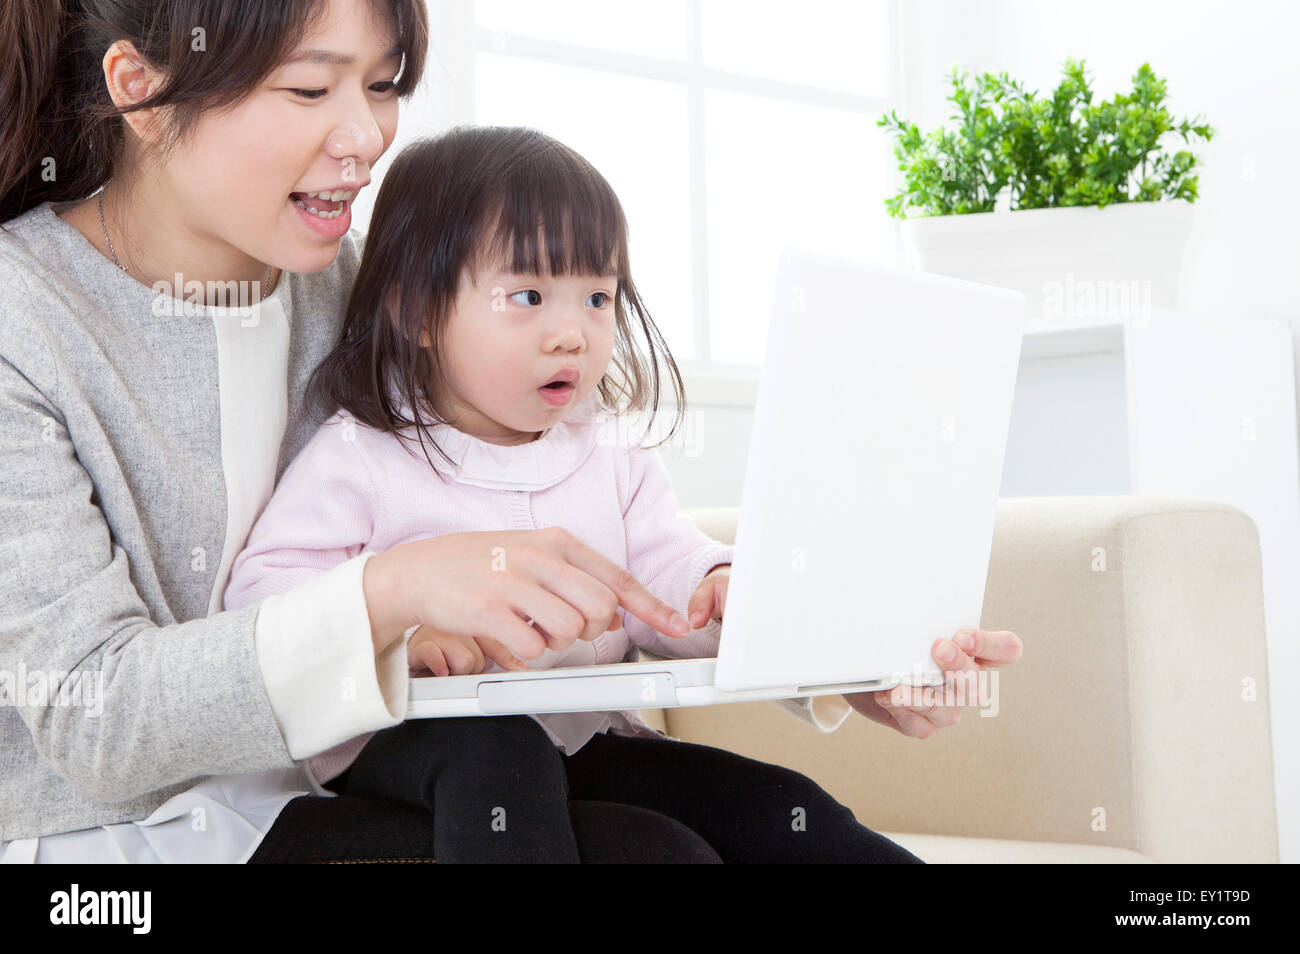 Mutter und Baby Mädchen Laptop zusammen zu spielen, Stockfoto